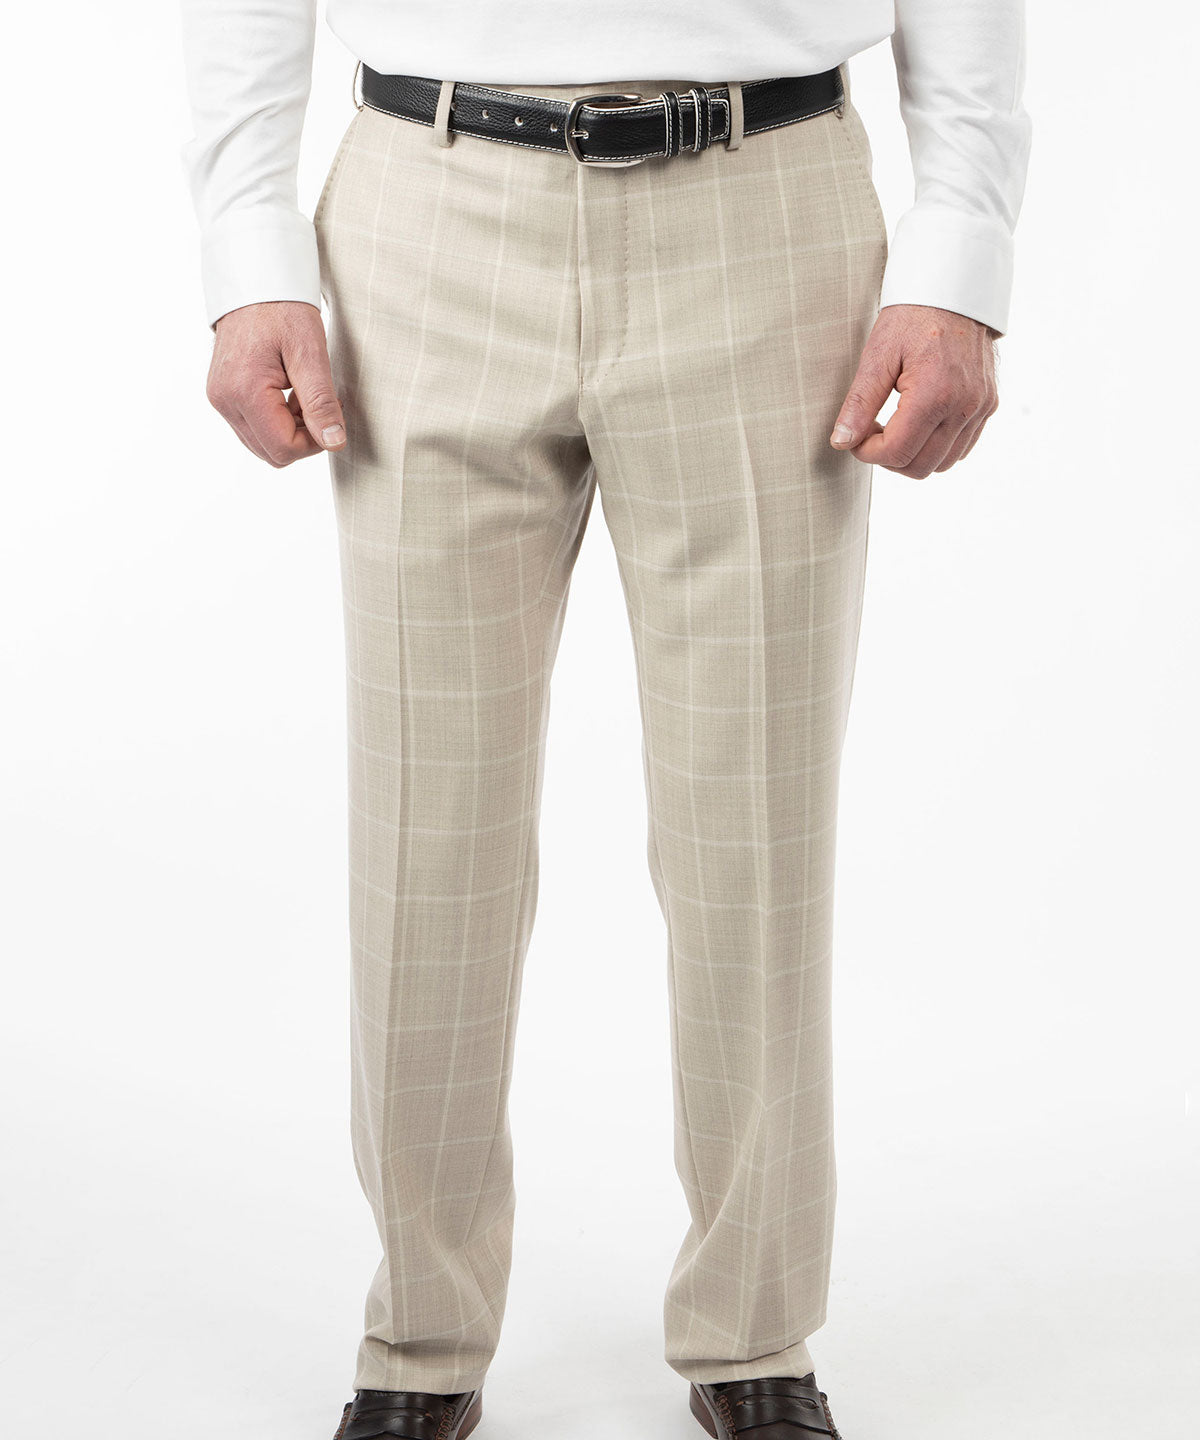 Men's Trousers Beige Mud Check Elegant Casual Slim Fit Prince of Wales |  eBay